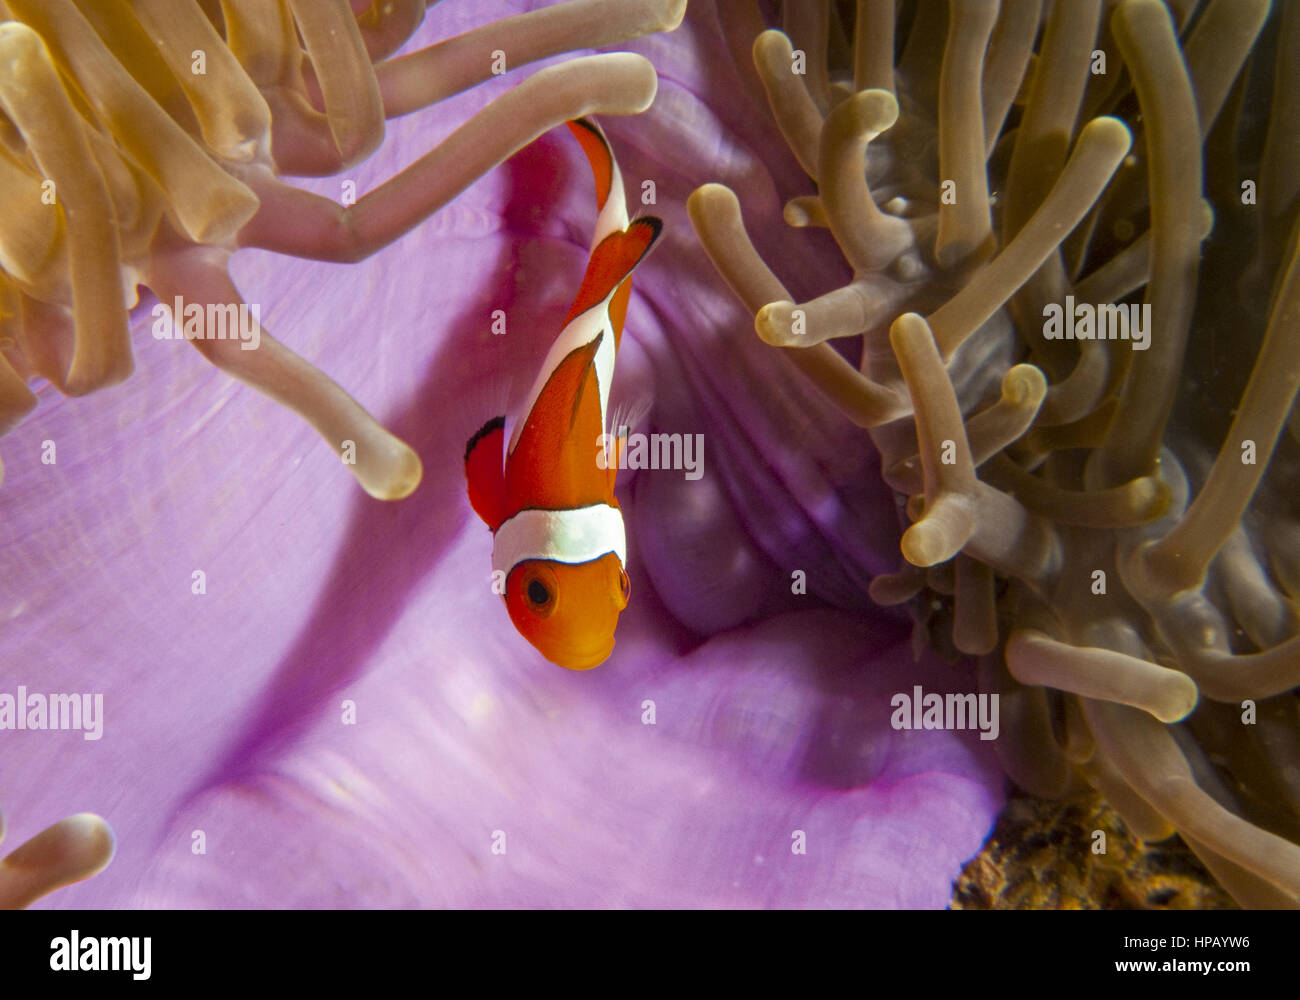 Clownfisch, unterwasseraufnahme Foto Stock